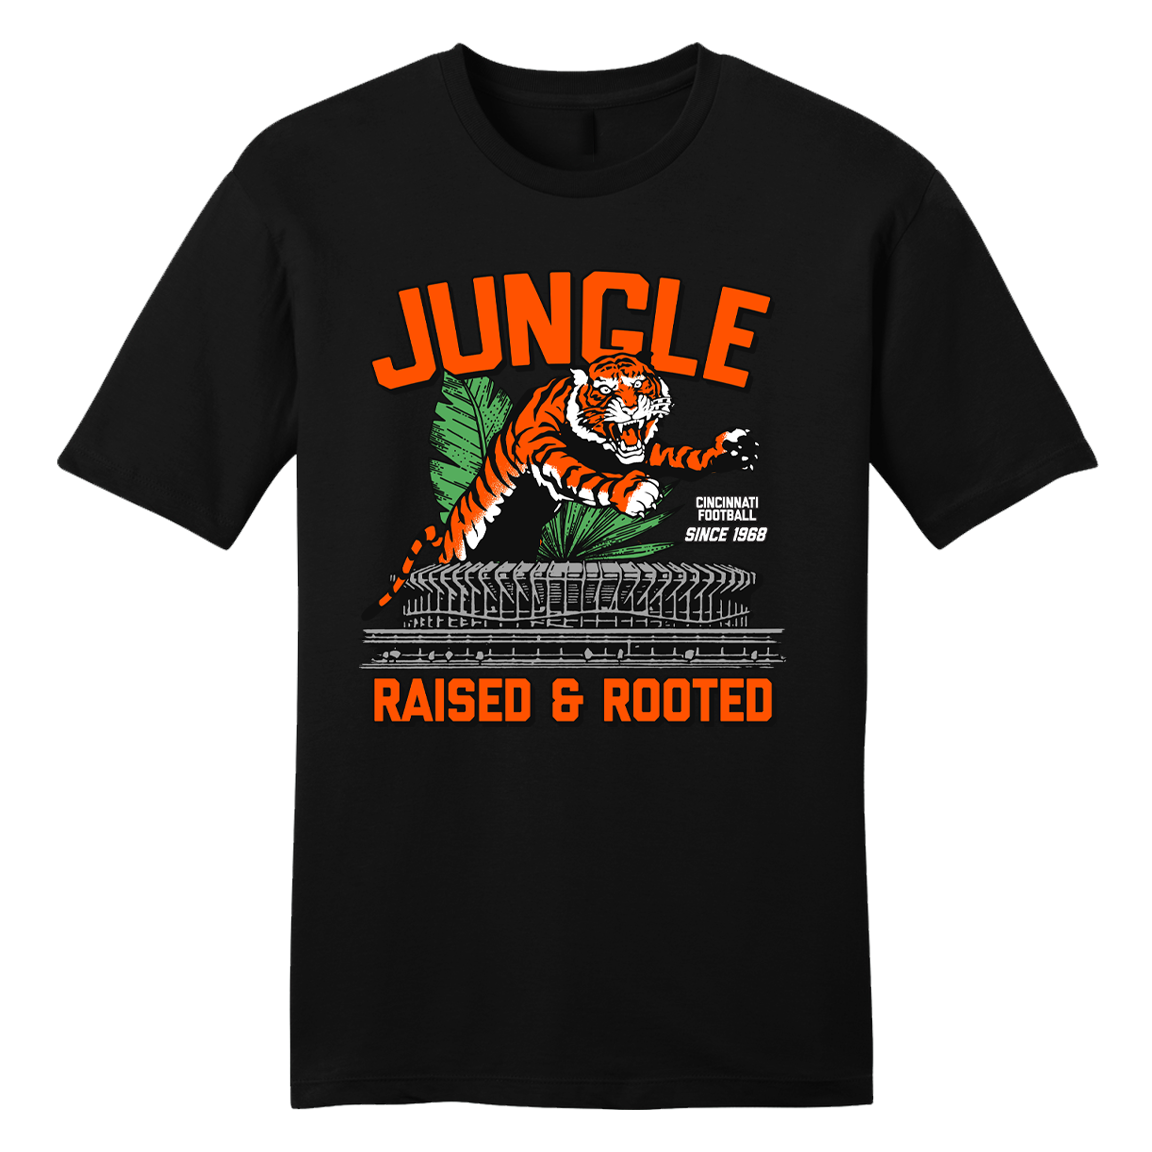 Raised & Rooted - Cincinnati Football - Cincy Shirts